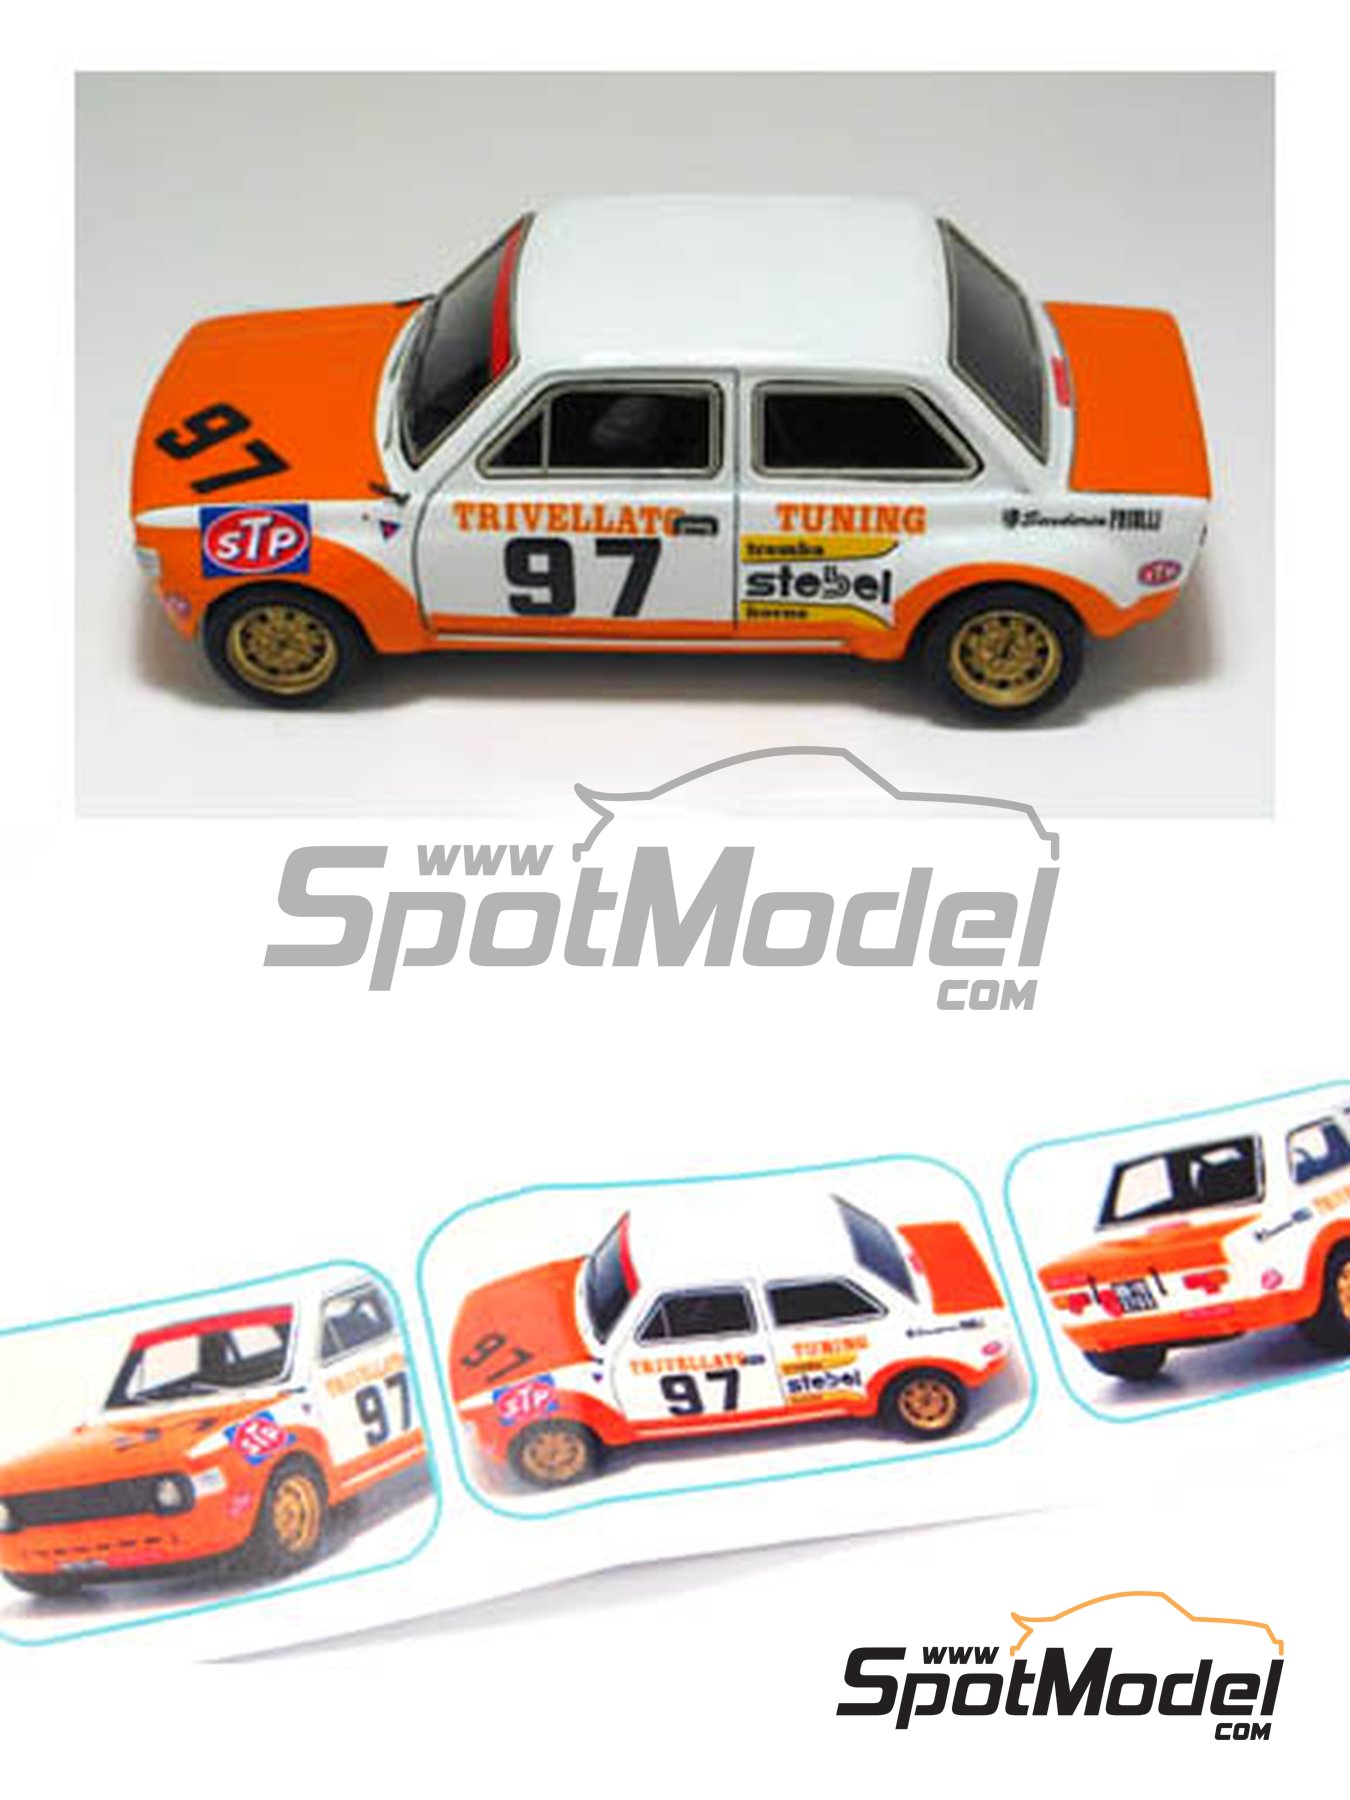 Arena Modelli ARE313: Car scale model kit 1/43 scale - Fiat 128